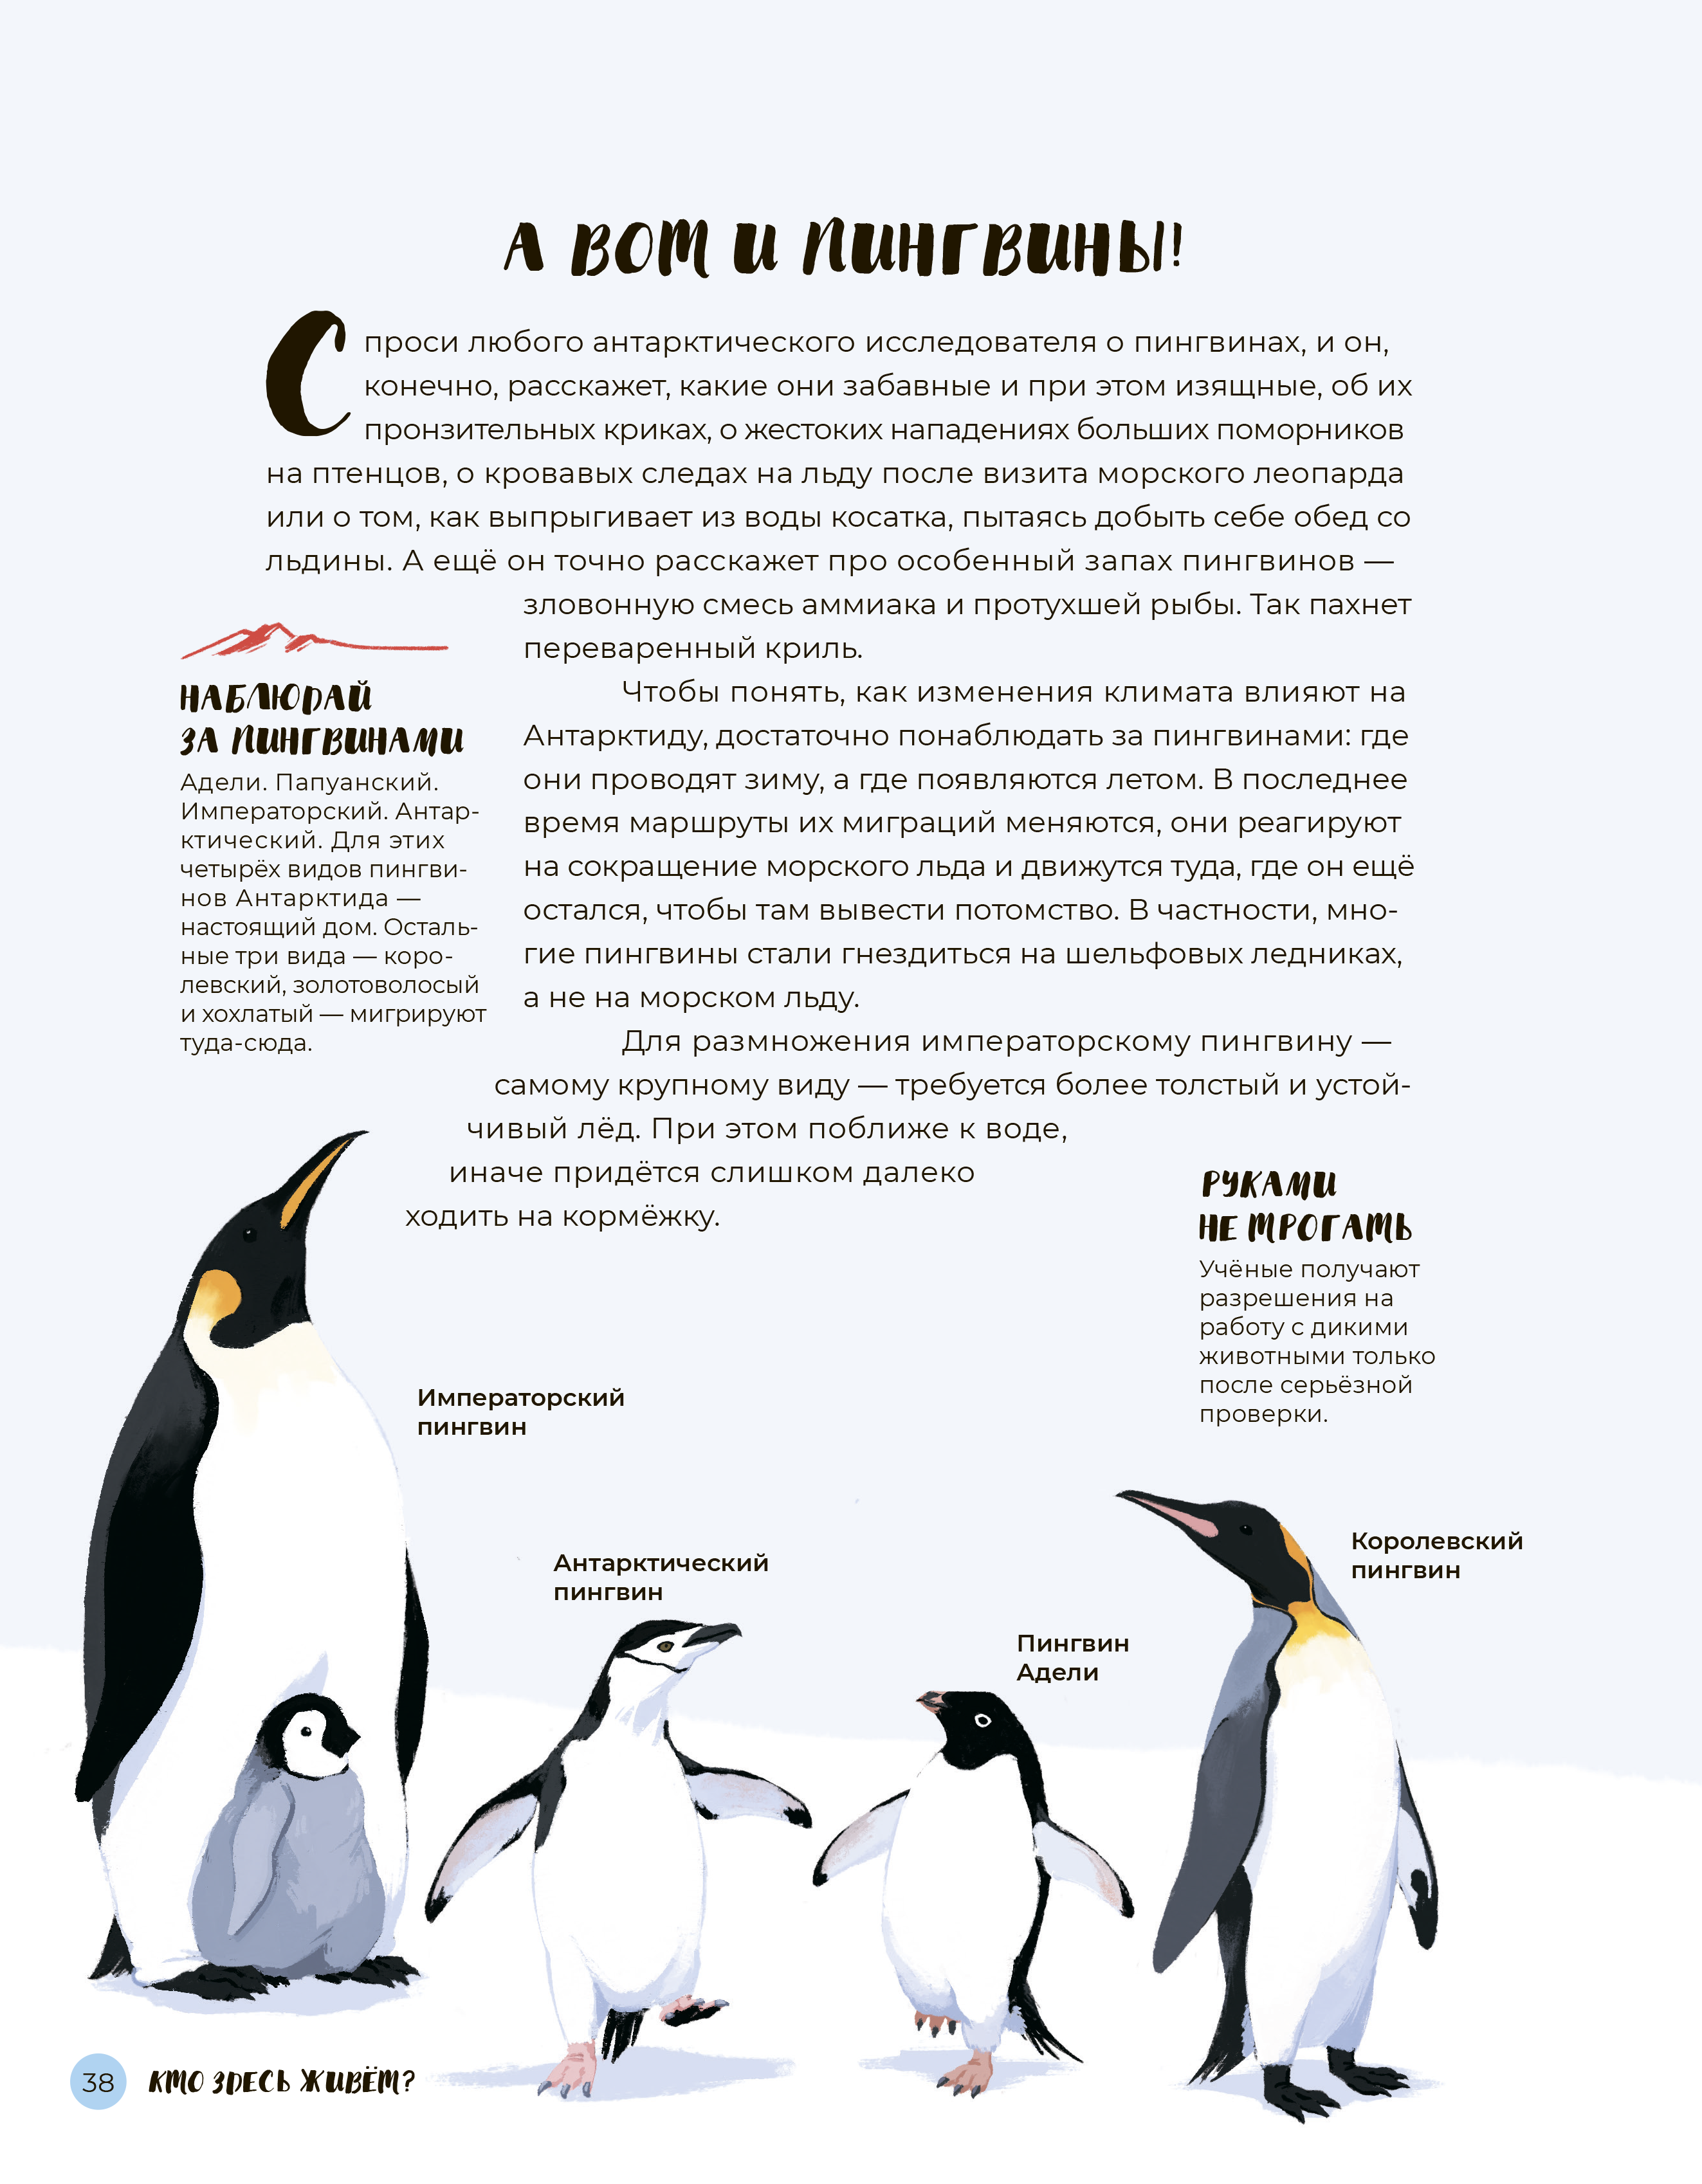 Самые известные жители Антарктиды — пингвины